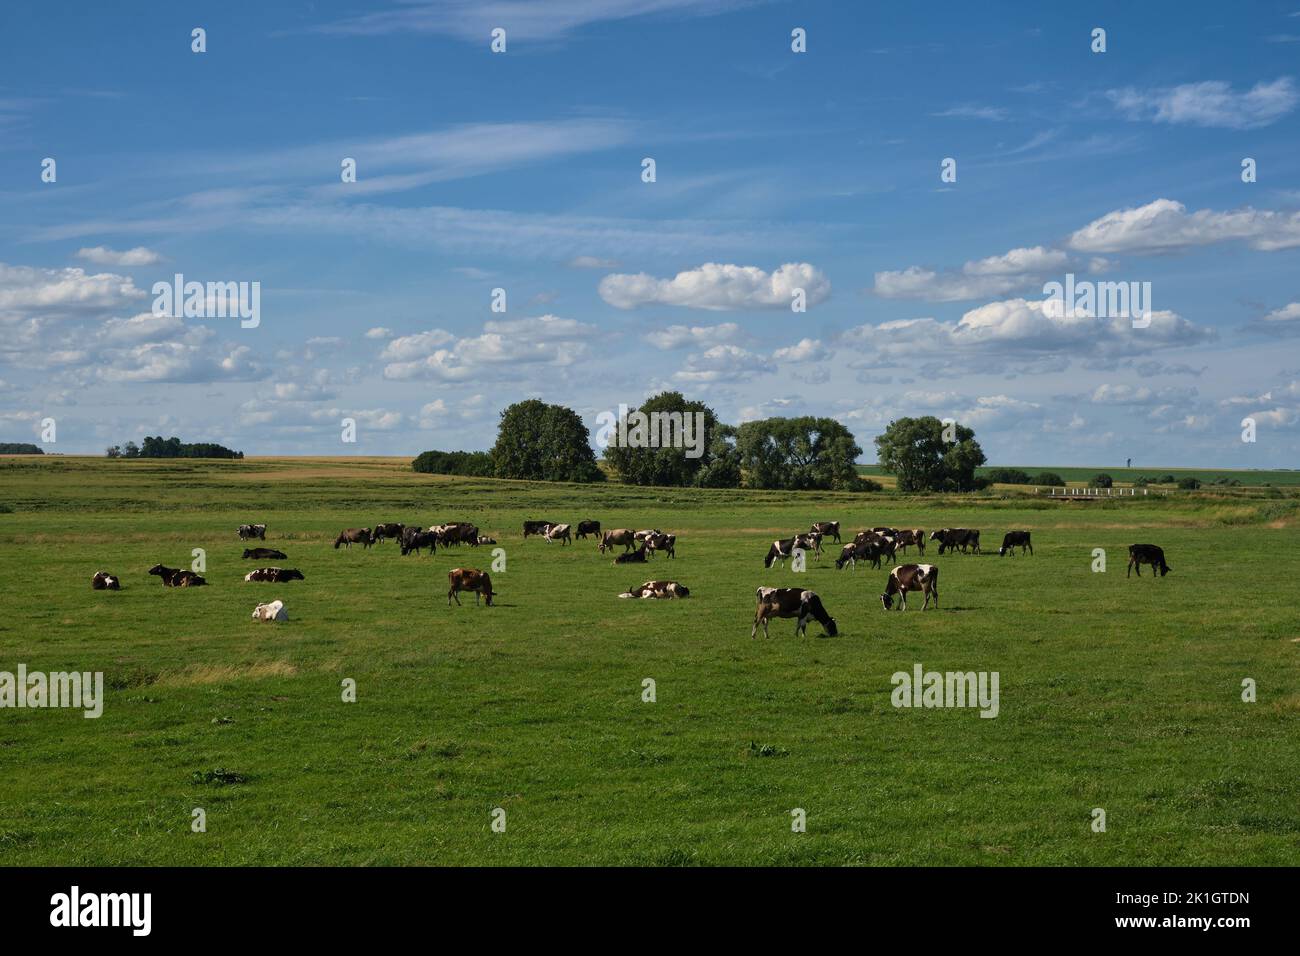 Una manada de vacas pastando en un prado en verano. Foto de stock